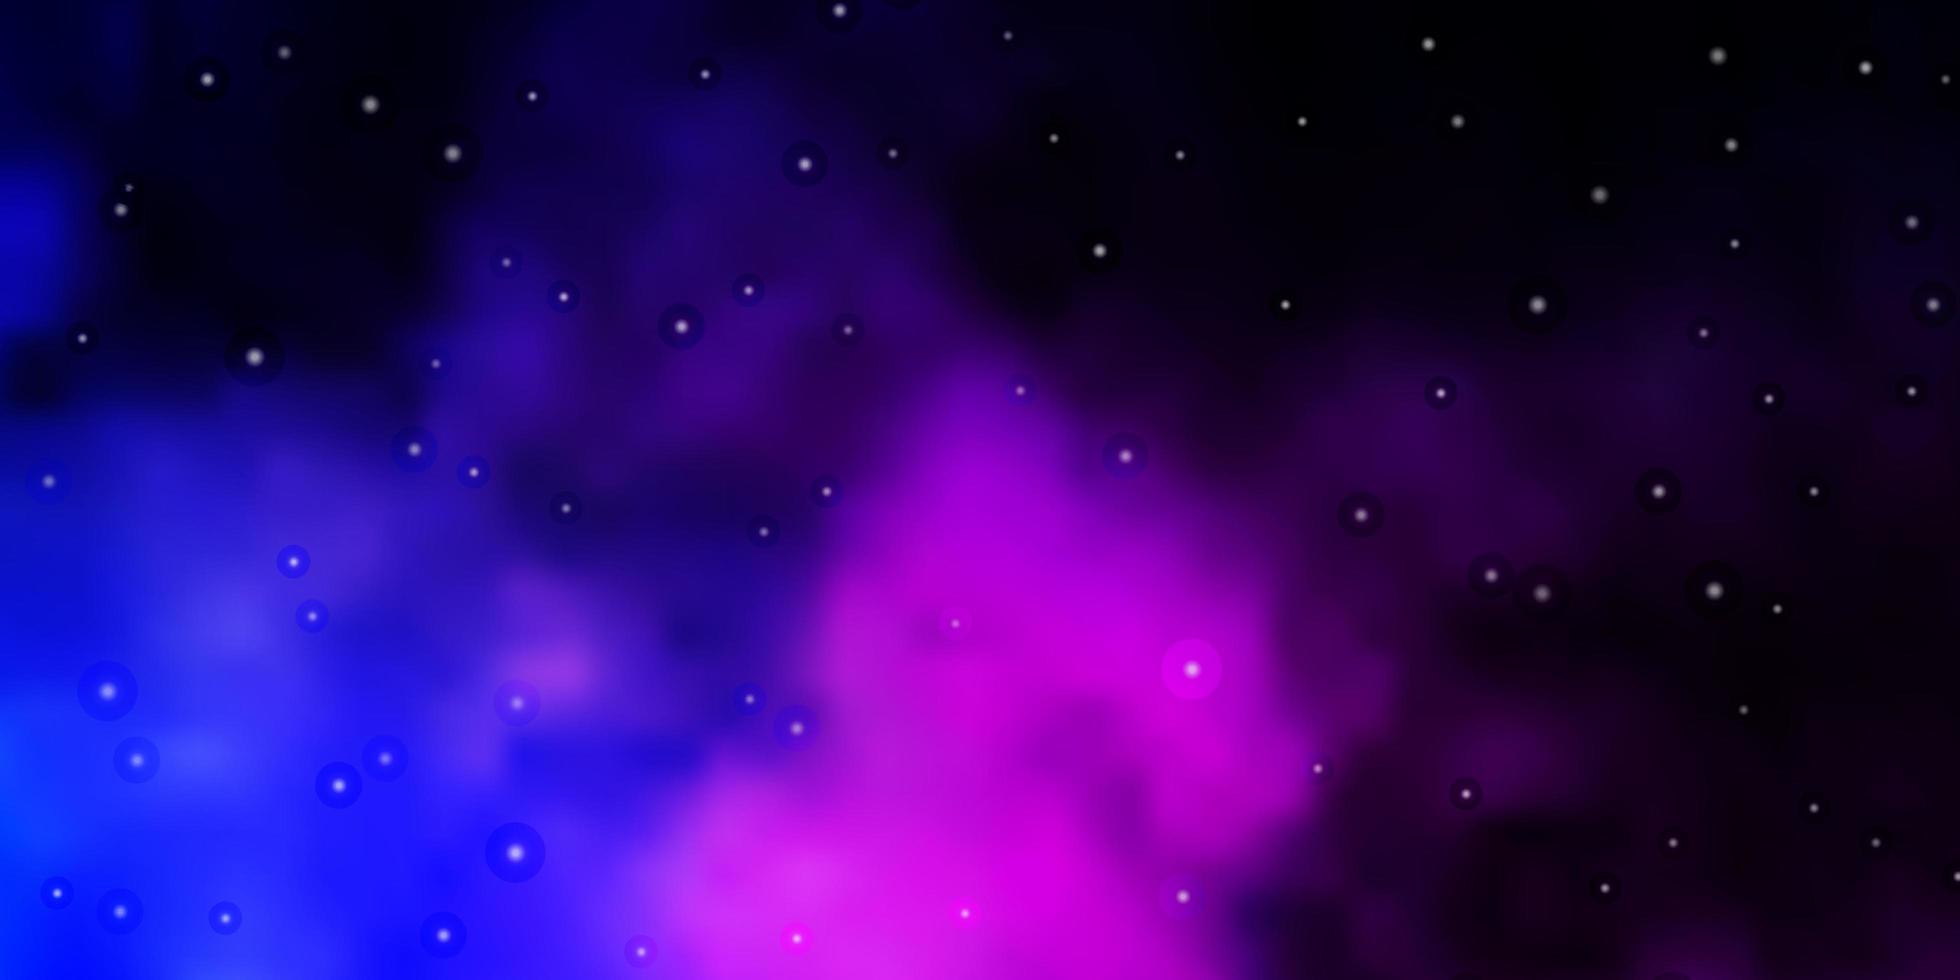 Dunkelrosa blaues Vektorlayout mit hellen Sternen bunte Illustration mit abstrakten Farbverlaufssternen bestes Design für Ihr Werbeplakatbanner vektor